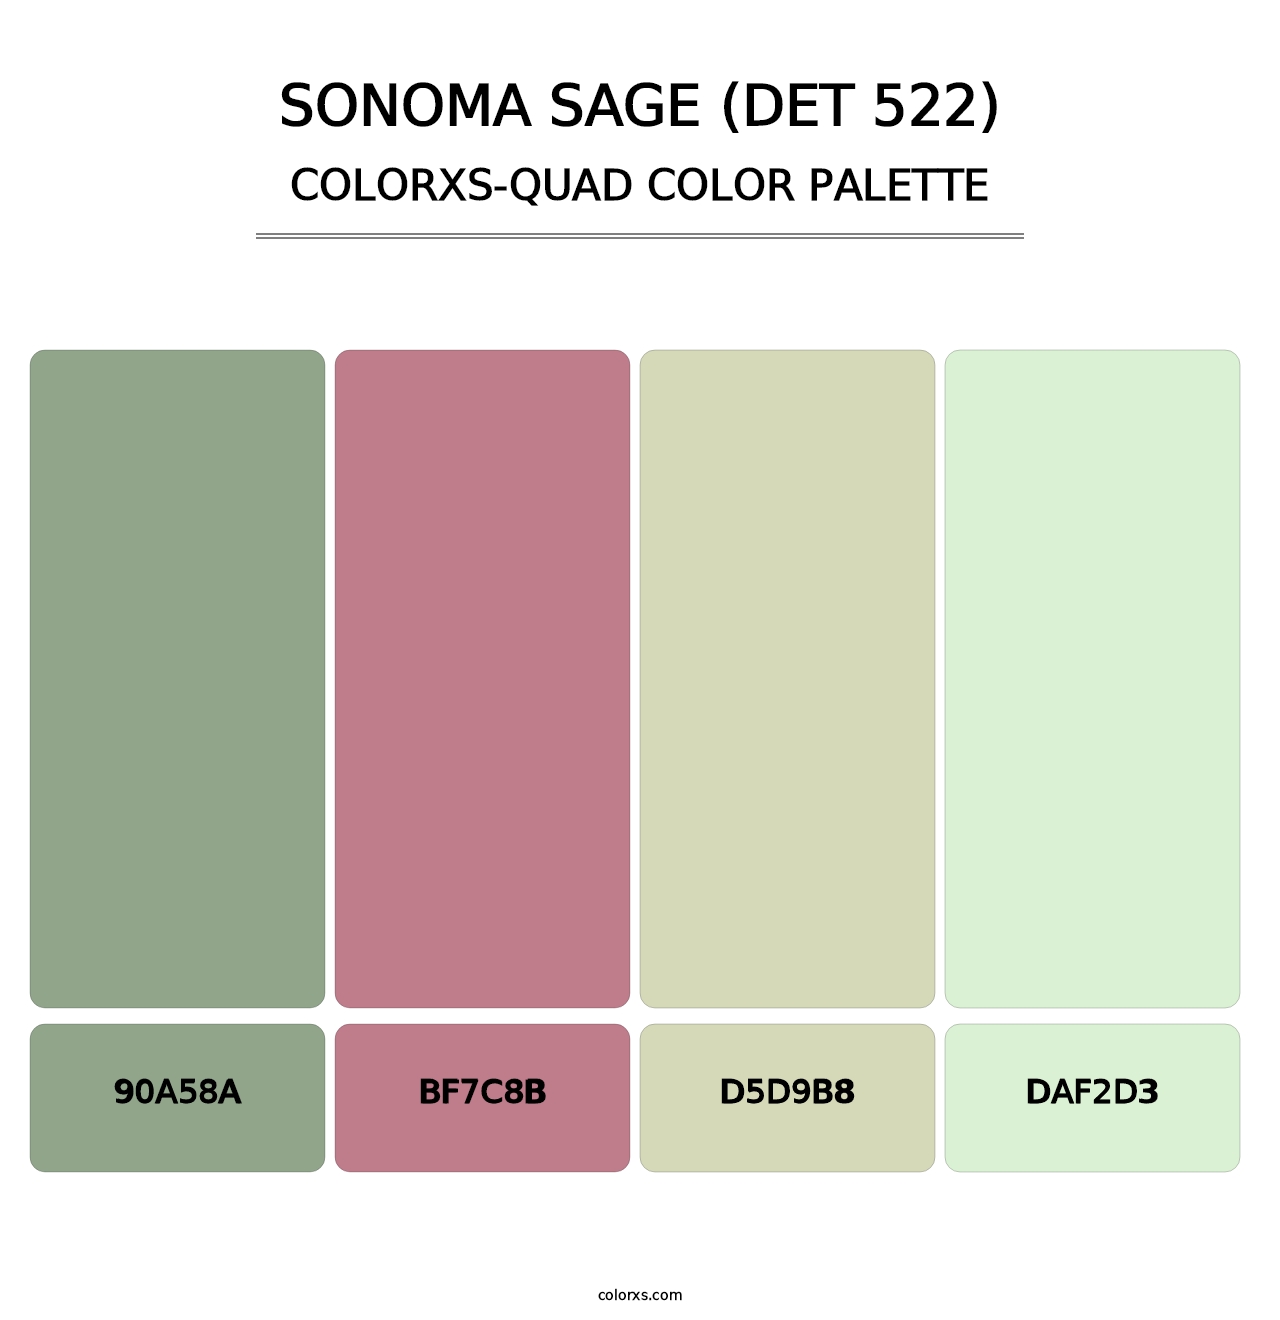 Sonoma Sage (DET 522) - Colorxs Quad Palette